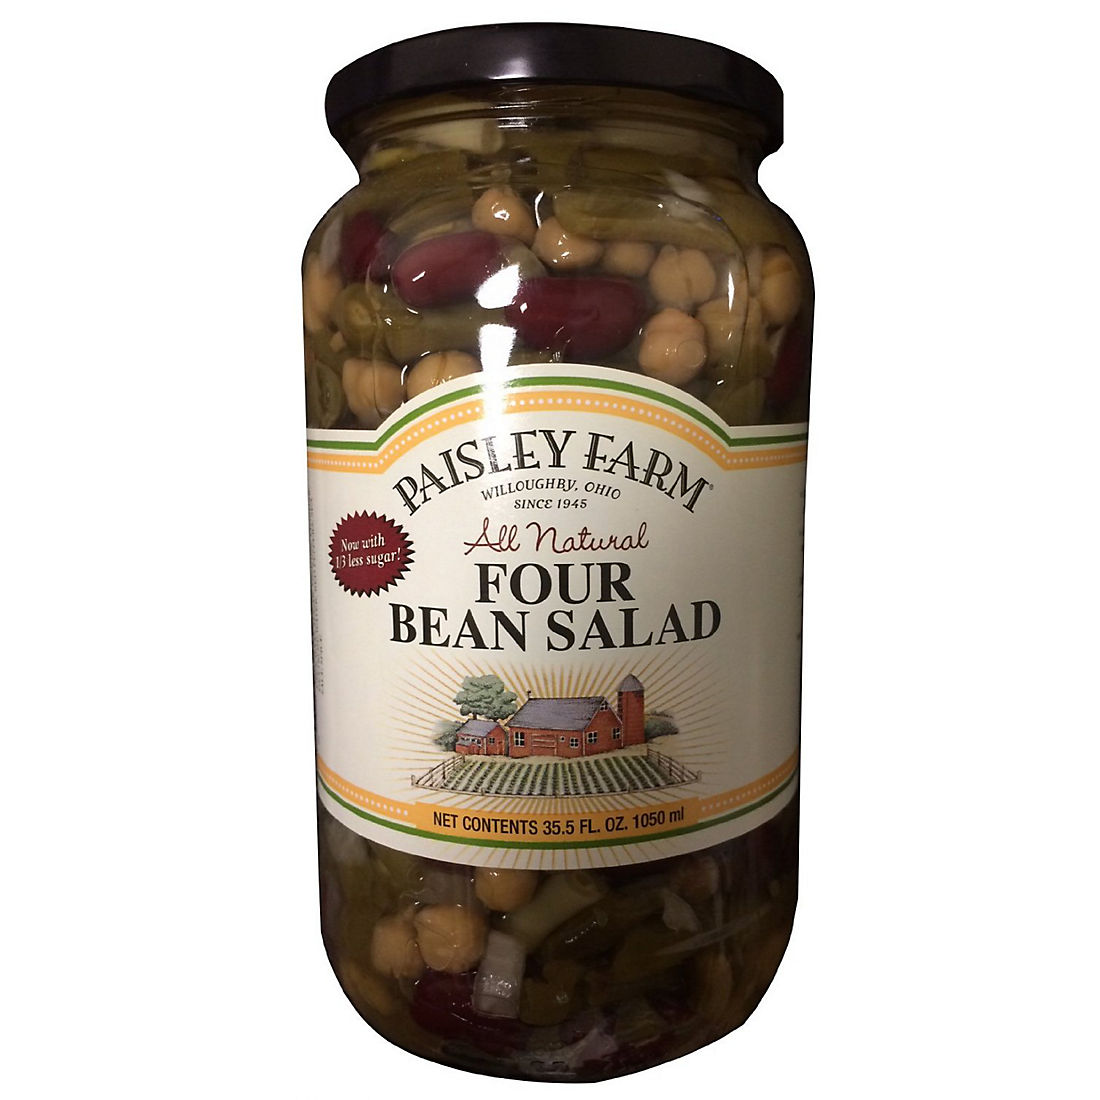 Paisley Farm Natural Four Bean Salad, 2 ct./35.5 oz. - BJs Wholesale Club